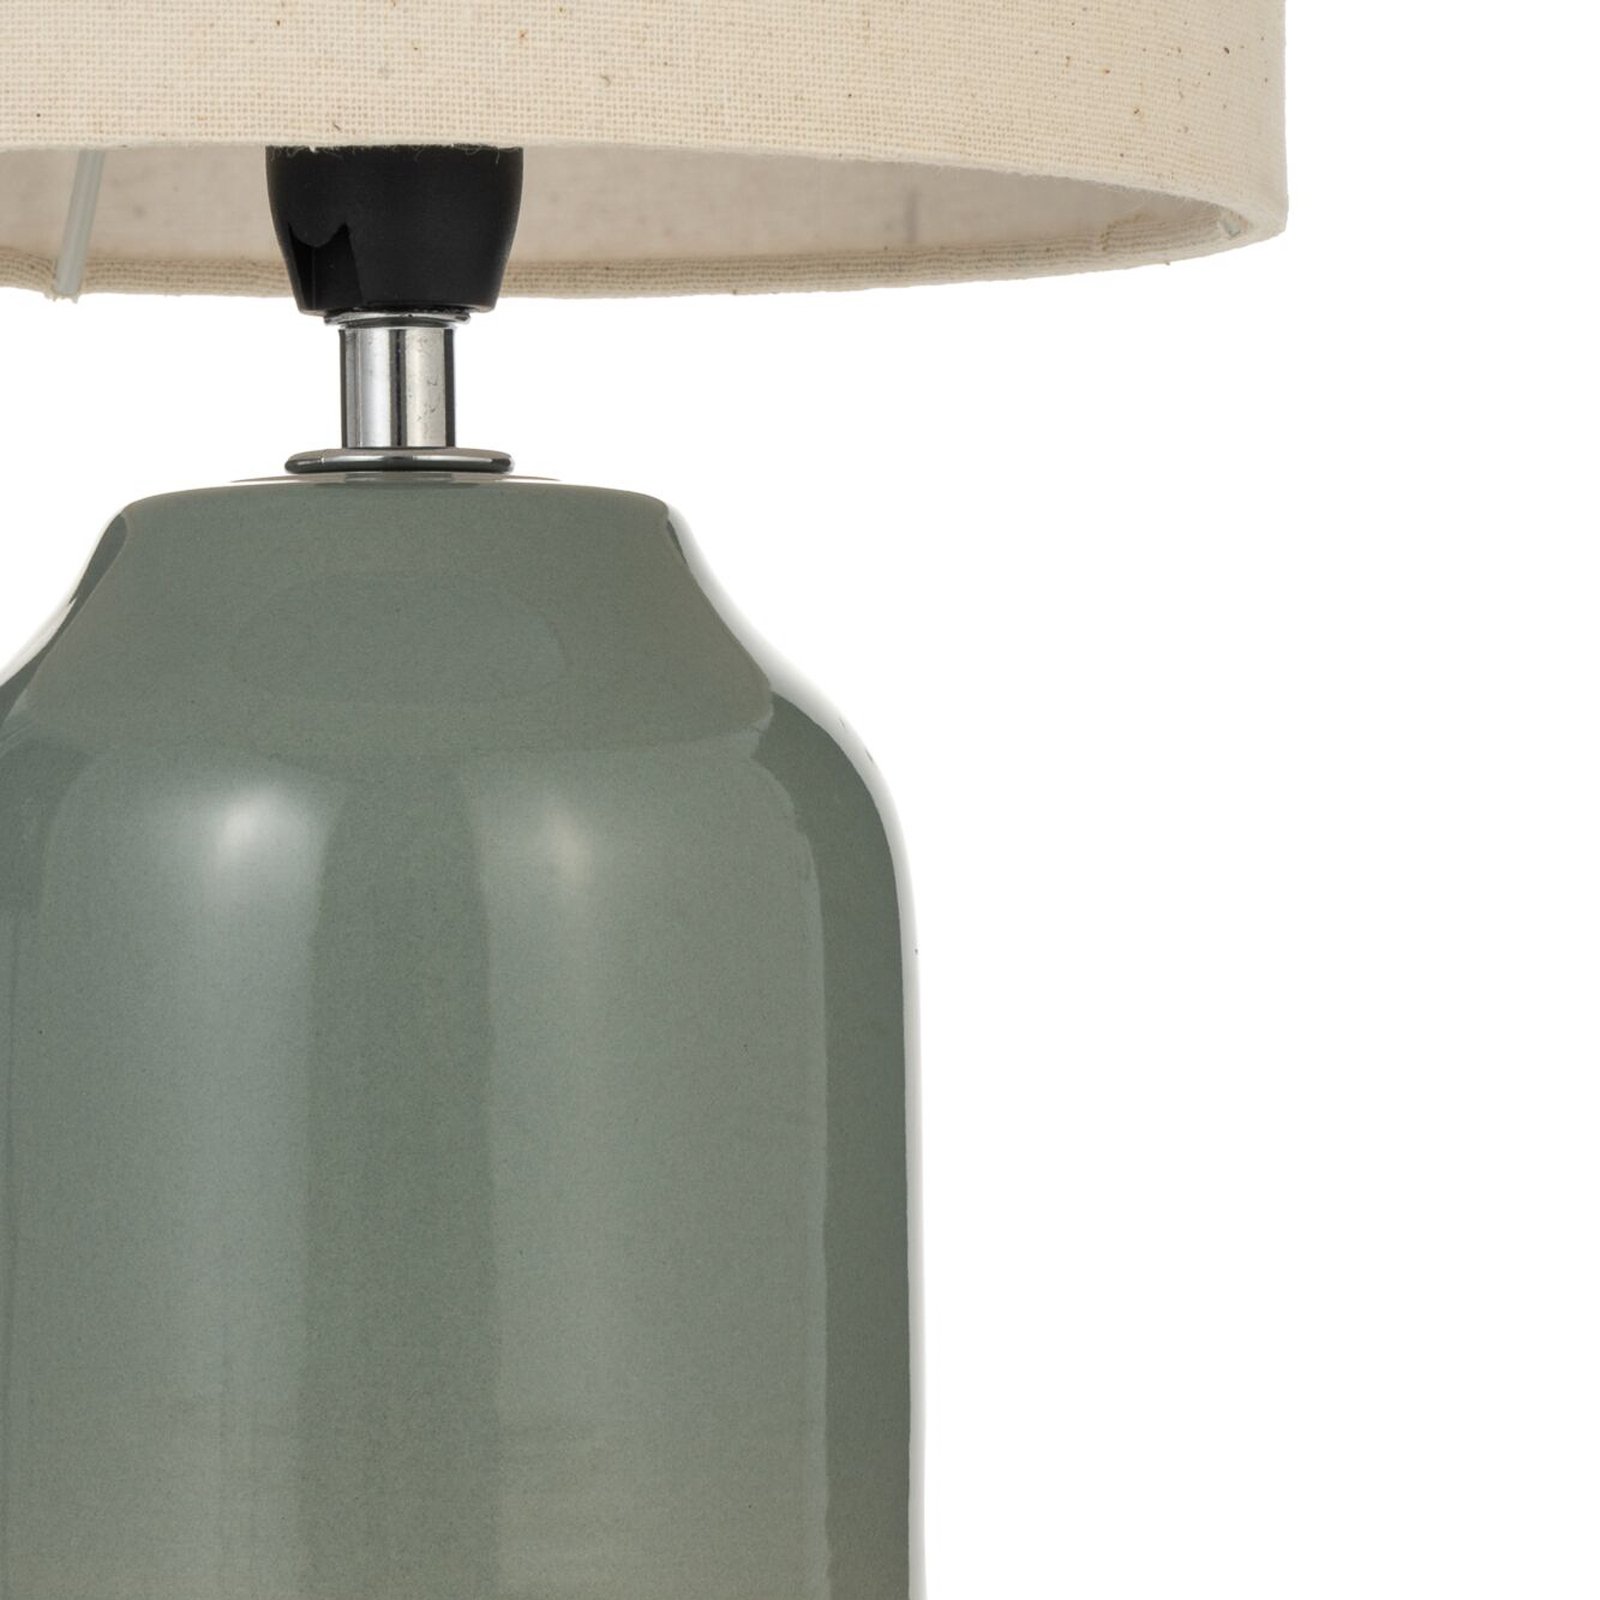 Pauleen Sandy Glow stolová lampa, krémová/zelená